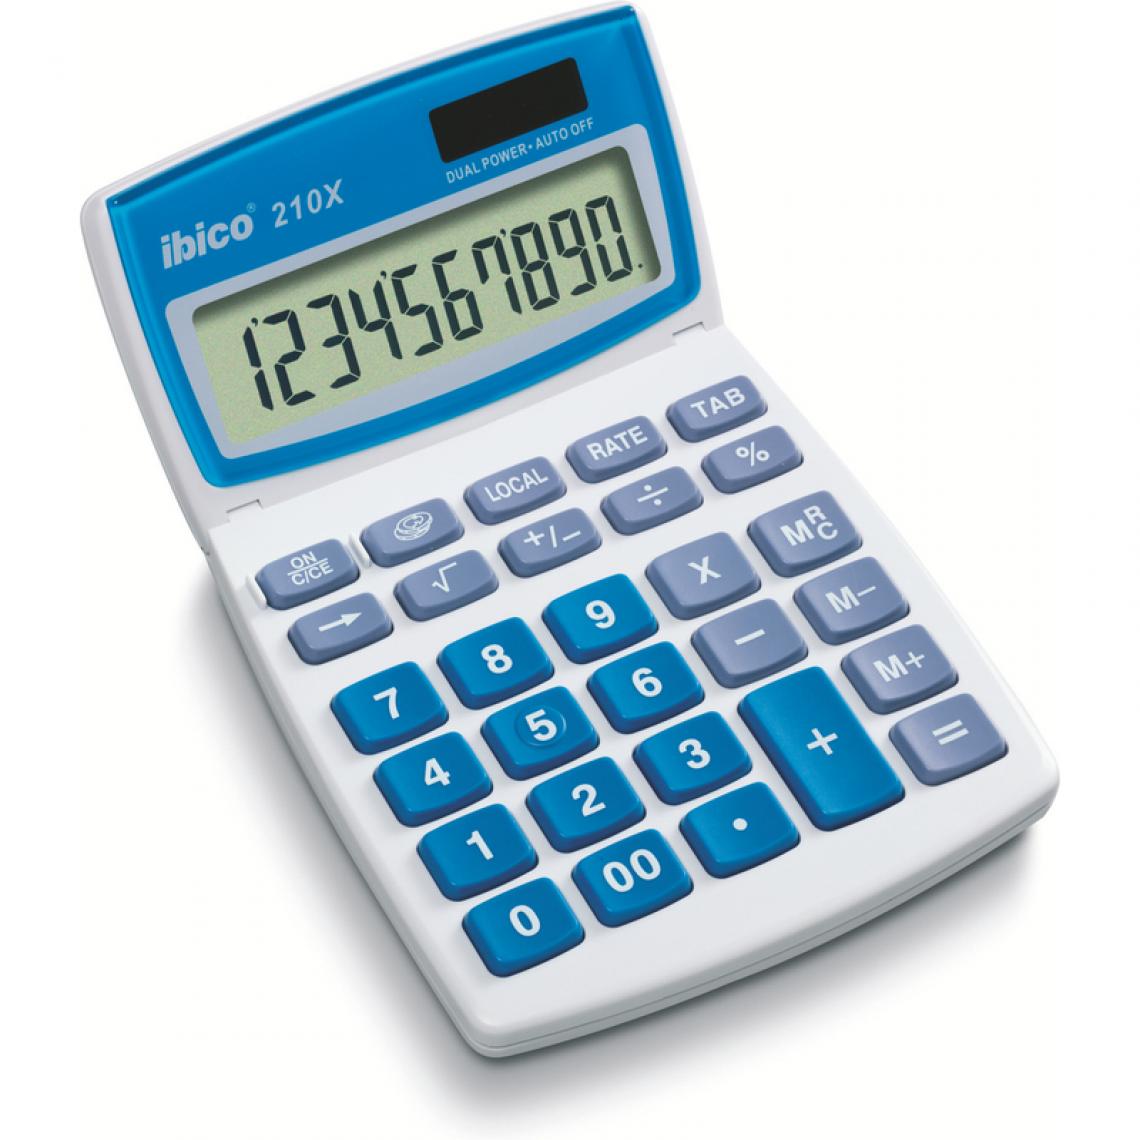 Ibico - ibico Calculatrice de bureau 210X, écran LCD 10 chiffres () - Accessoires Bureau